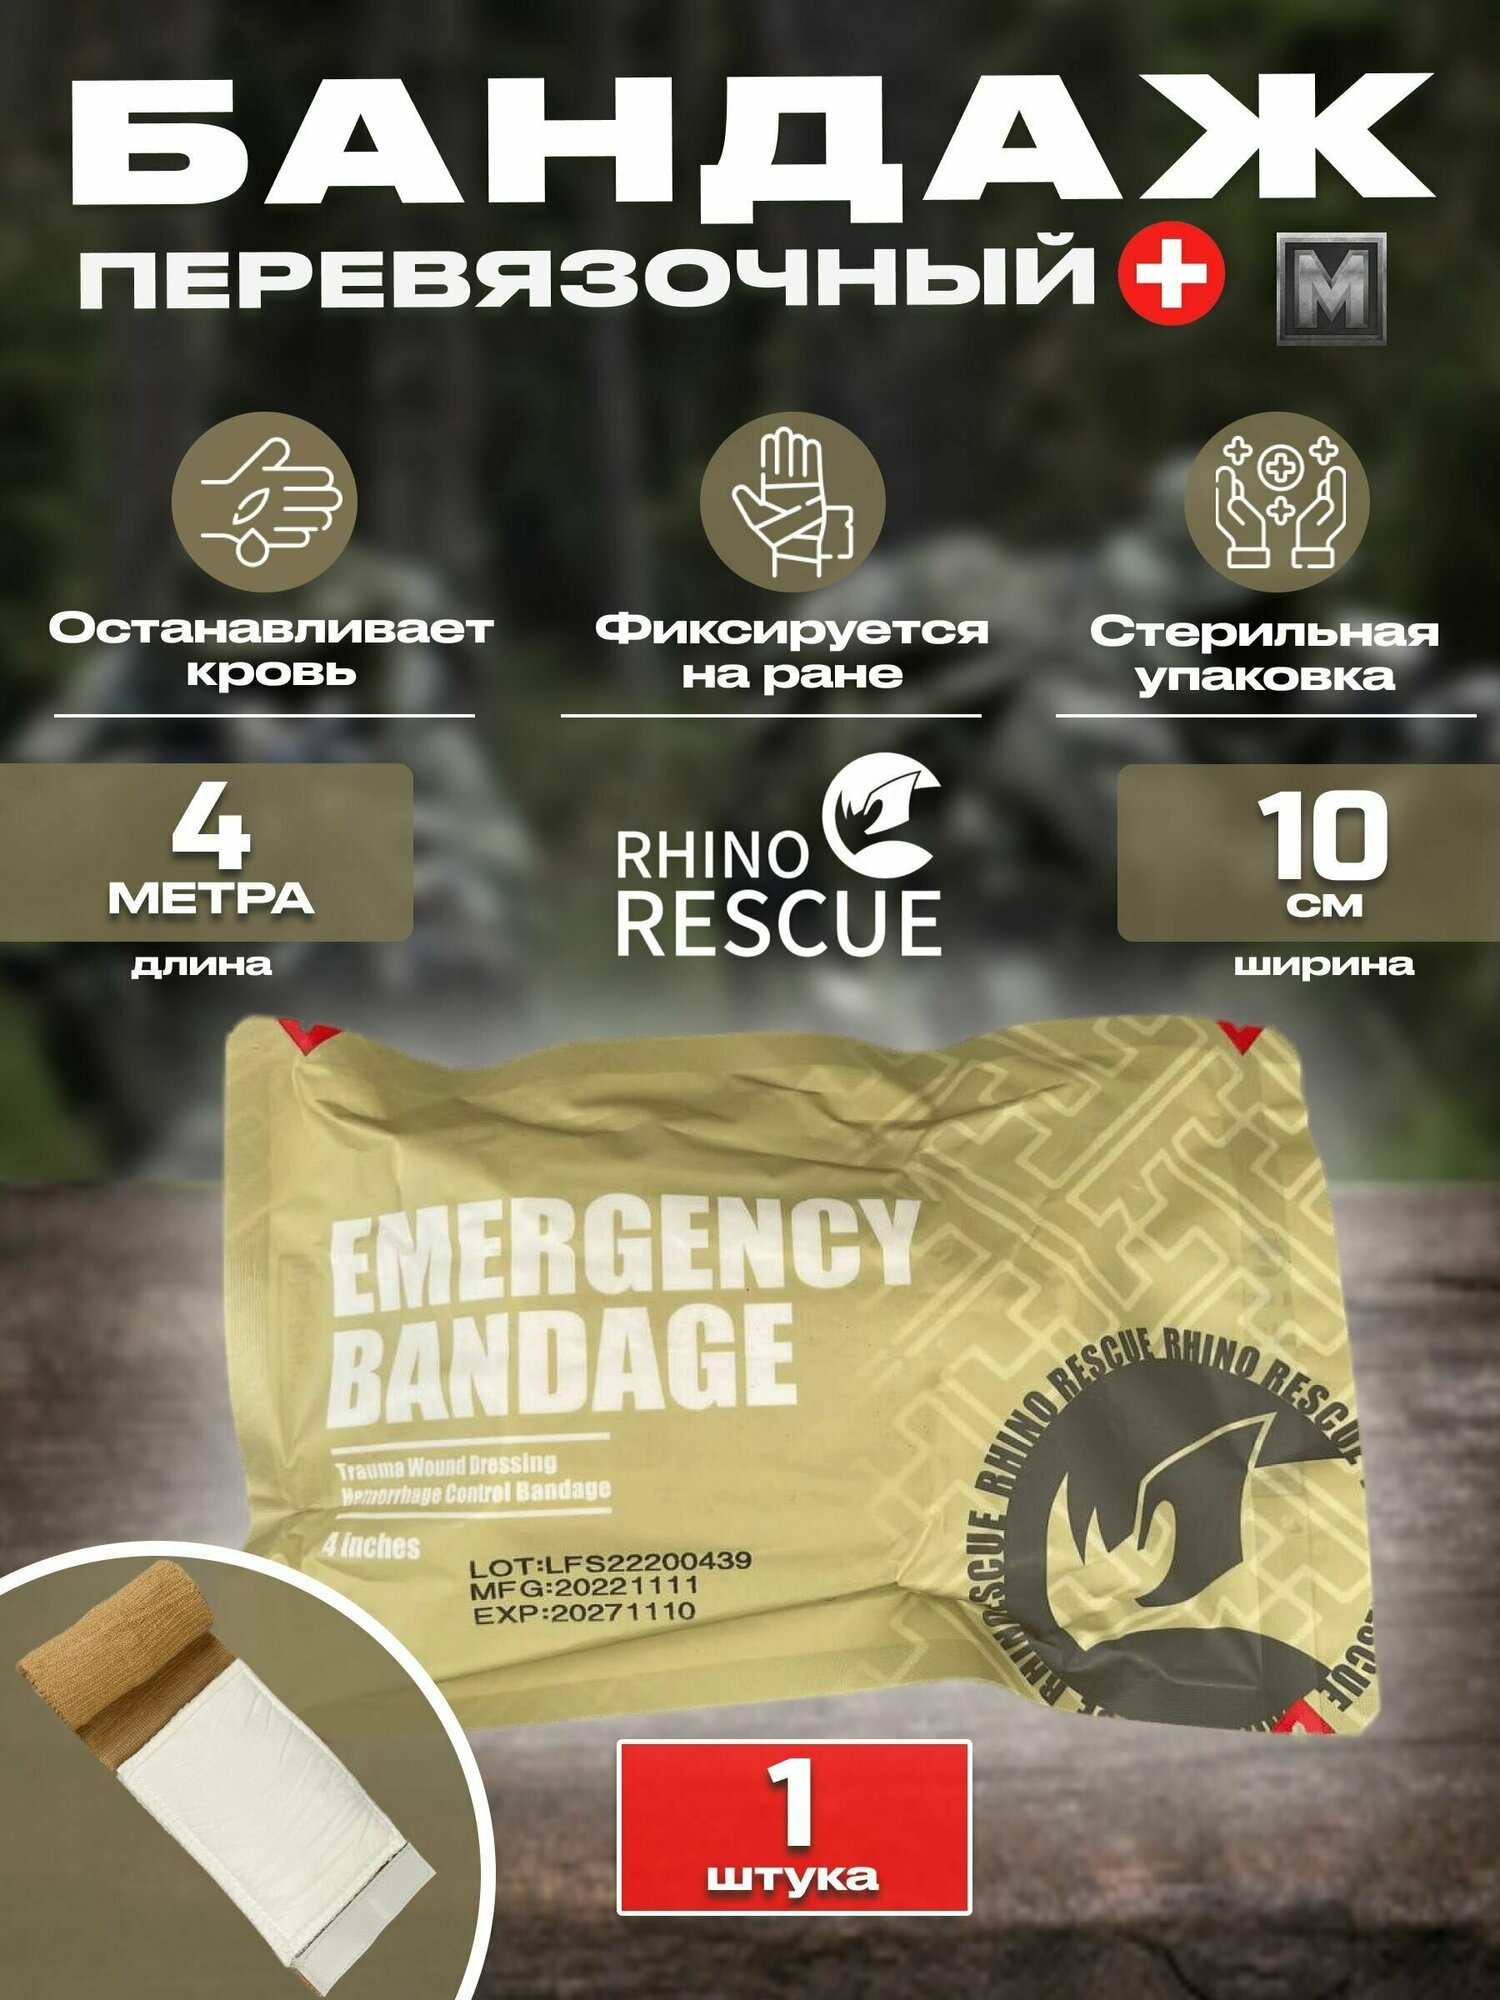 Emergency Bandage ИПП/ППИ тактический медицинский компрессионный бандаж 4" - 1 шт